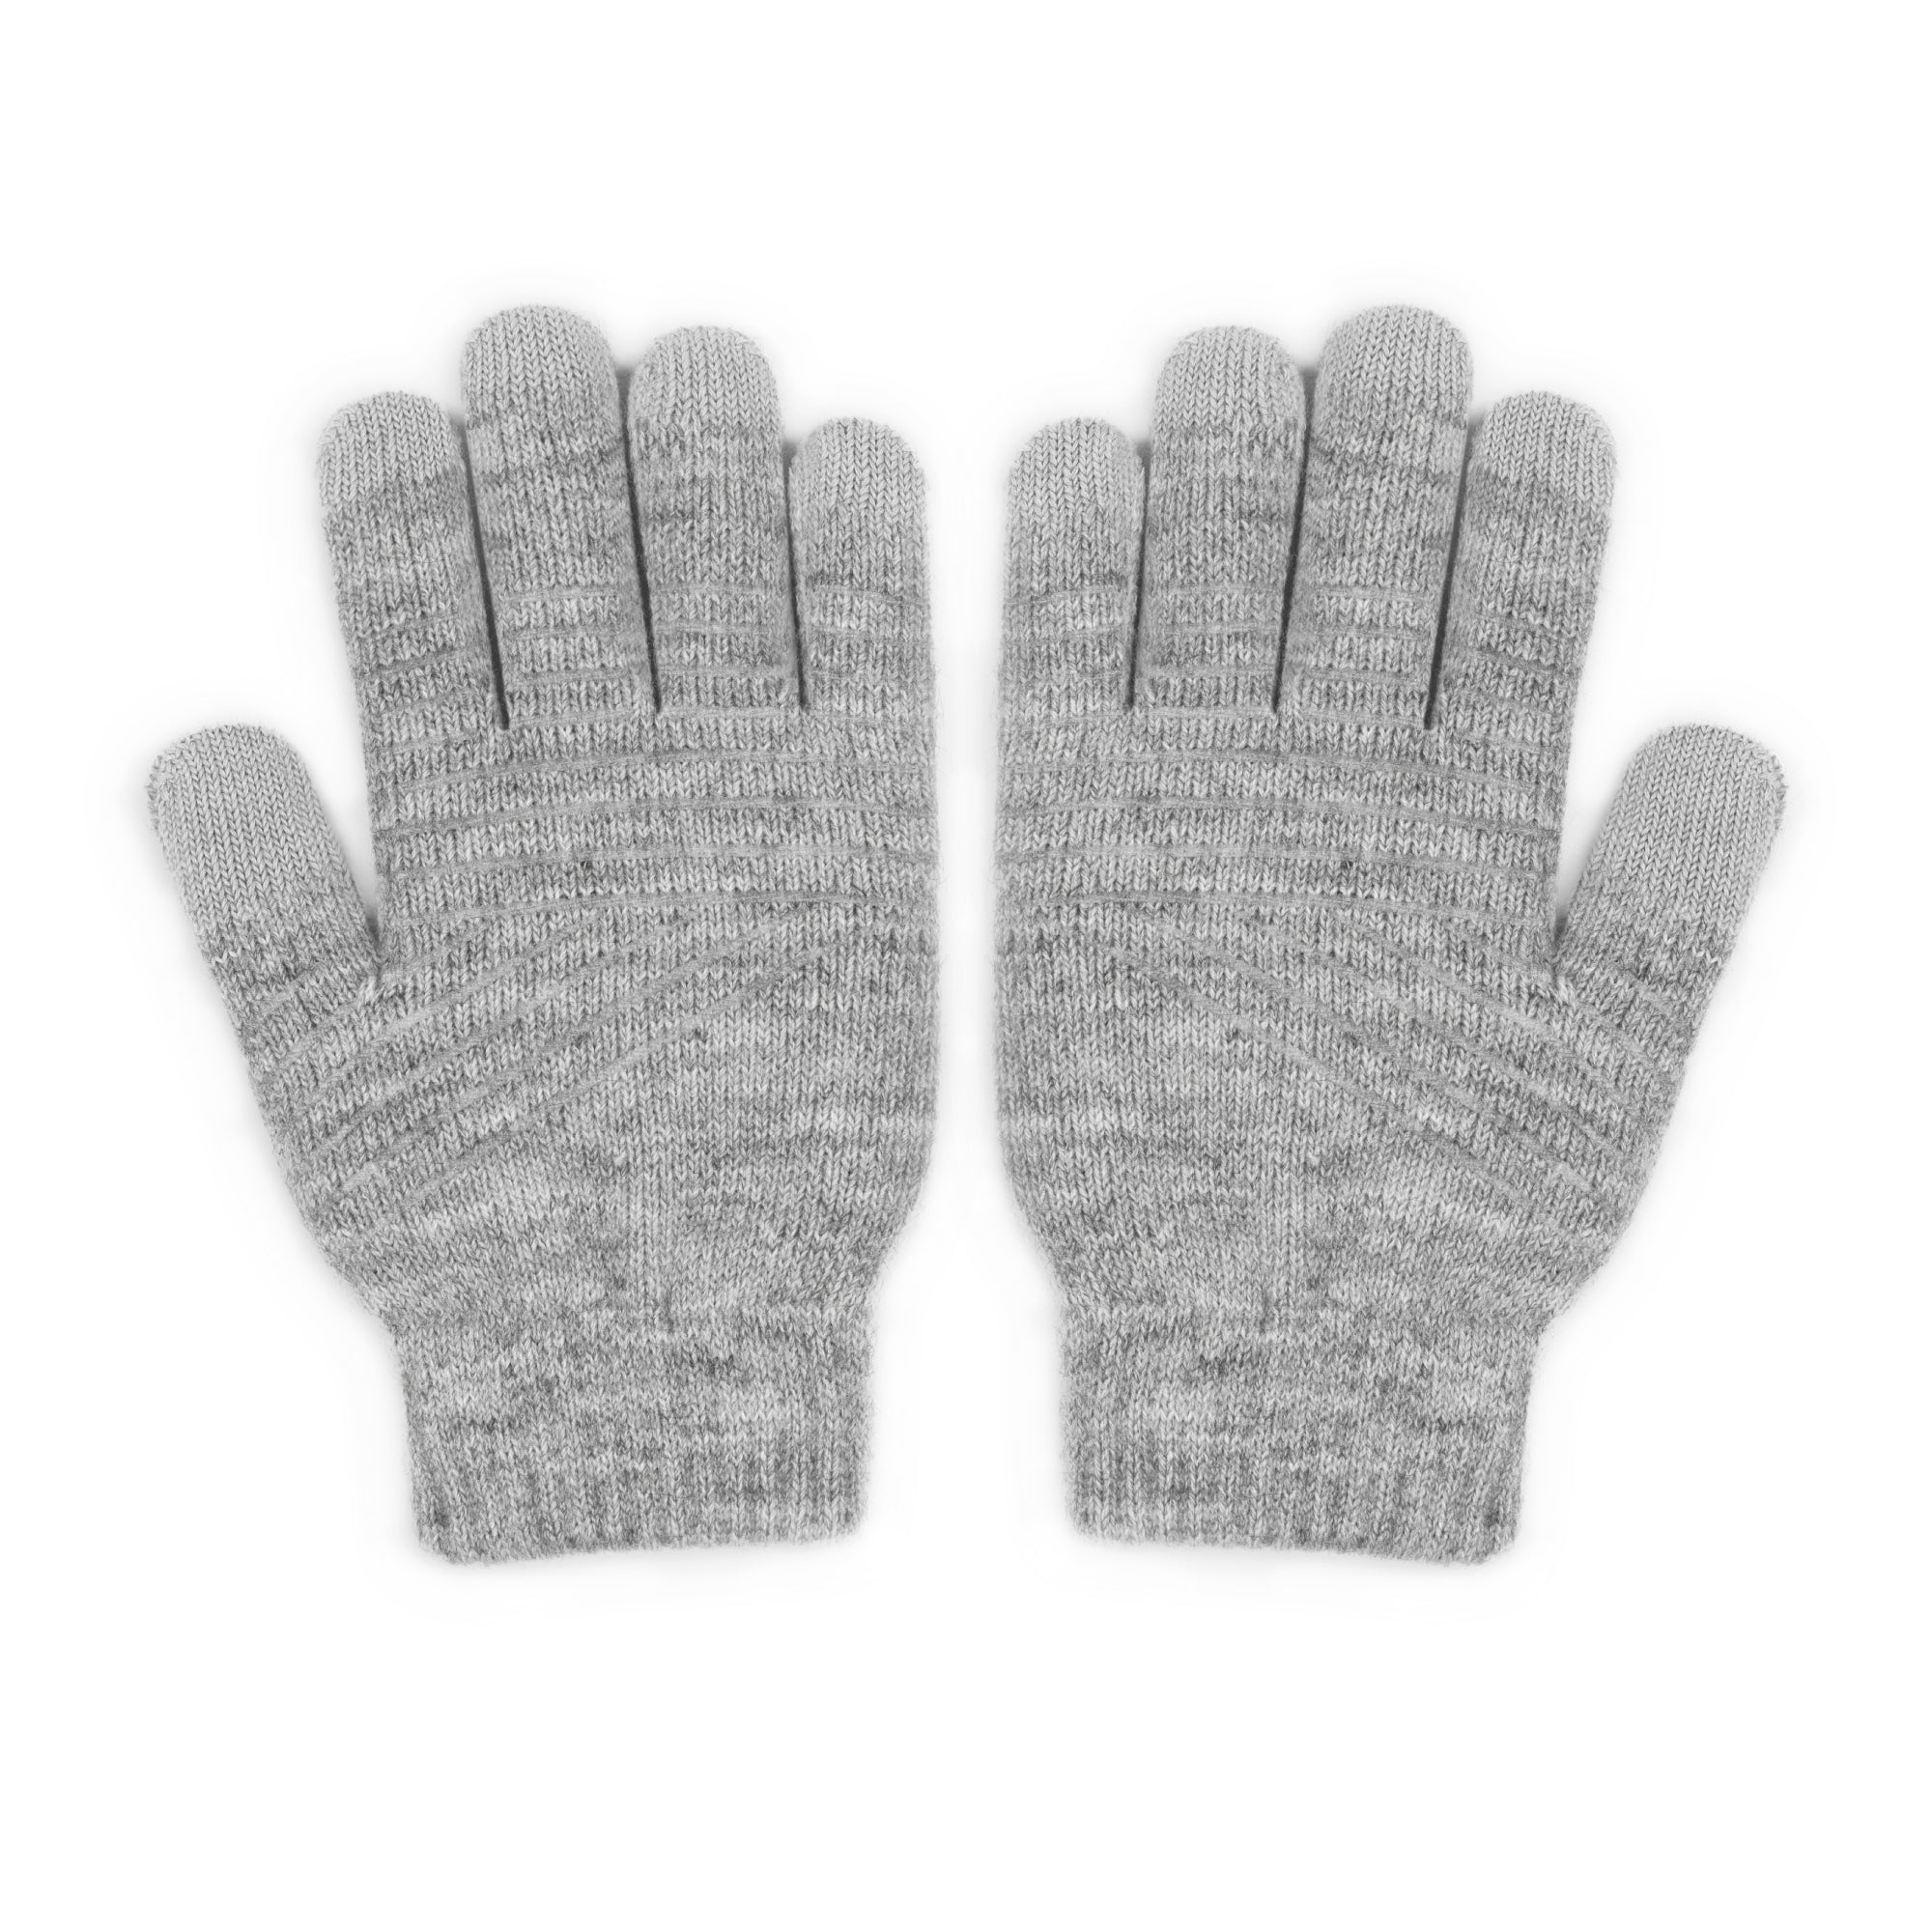 Digits Touchscreen Gloves 2.0